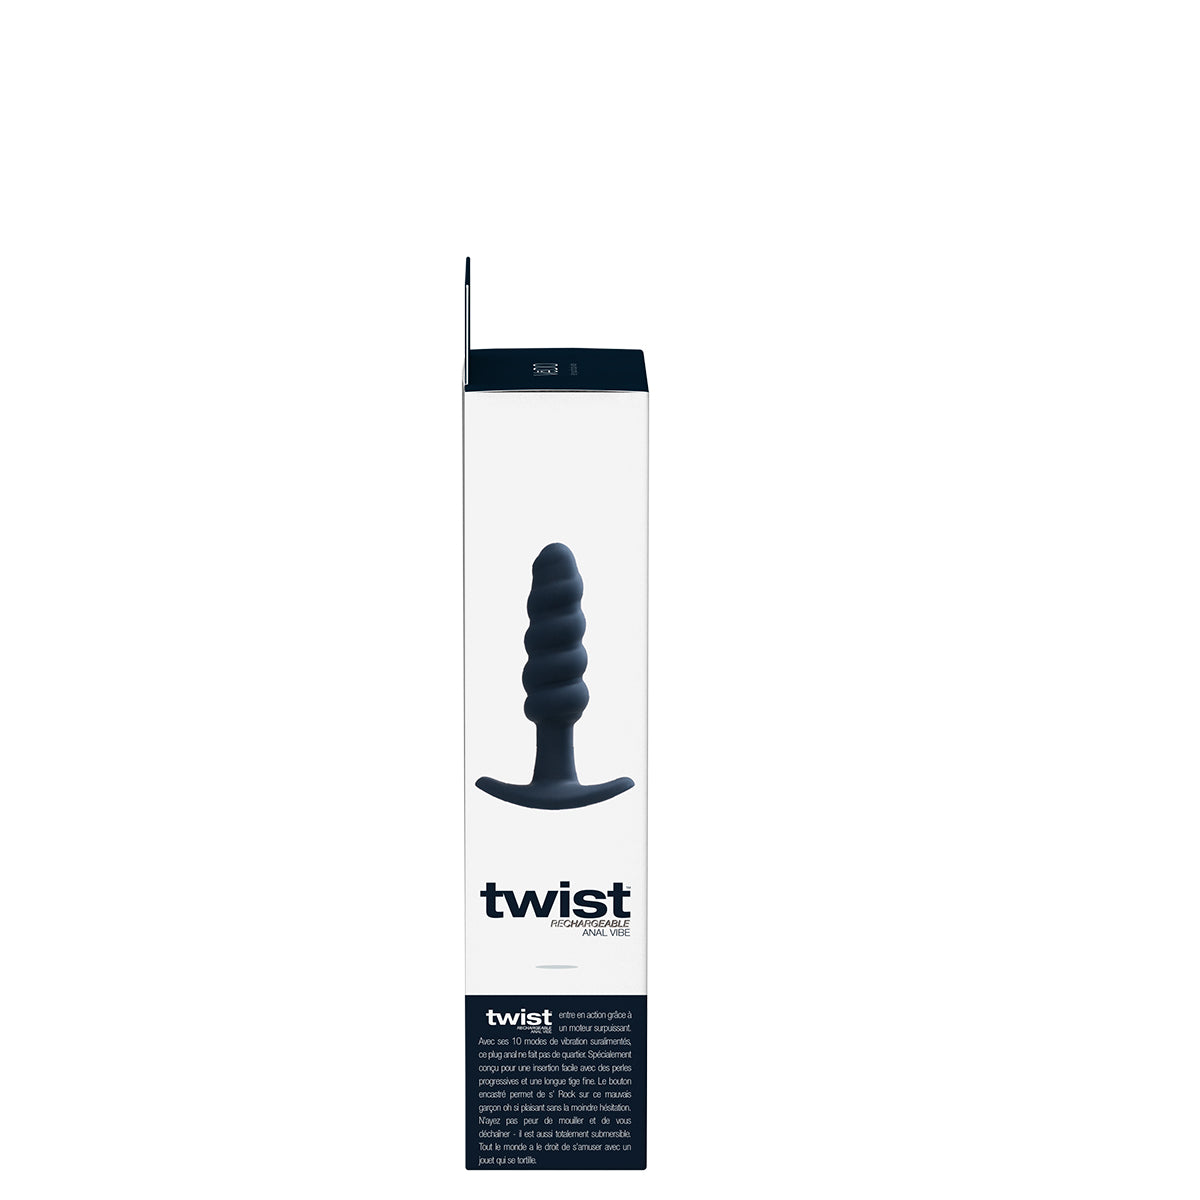 VeDO Twist Plug - Black